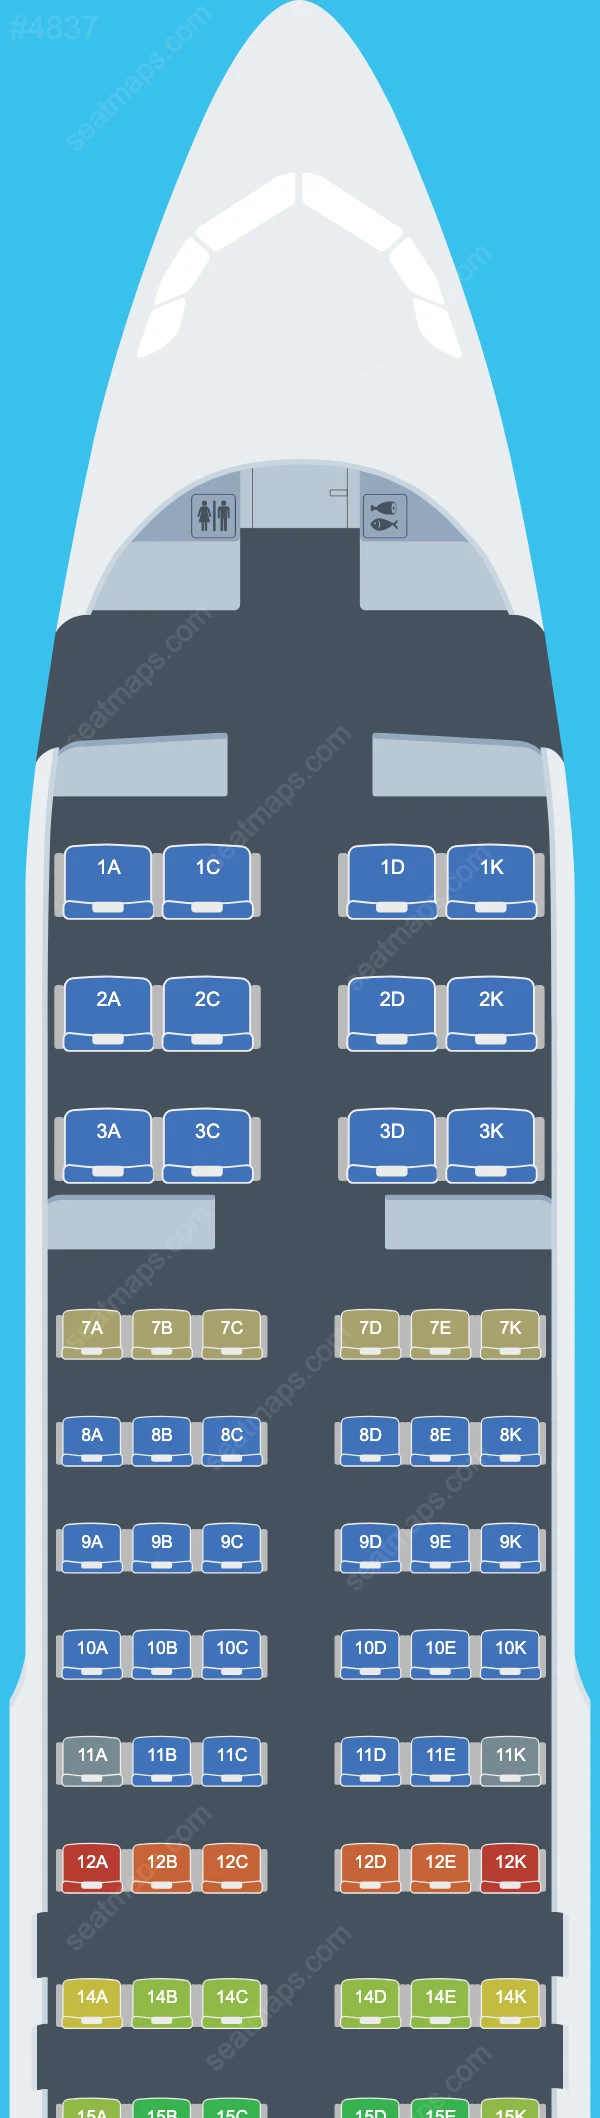 Схема салона Avianca El Salvador в самолете Airbus A320 A320-200